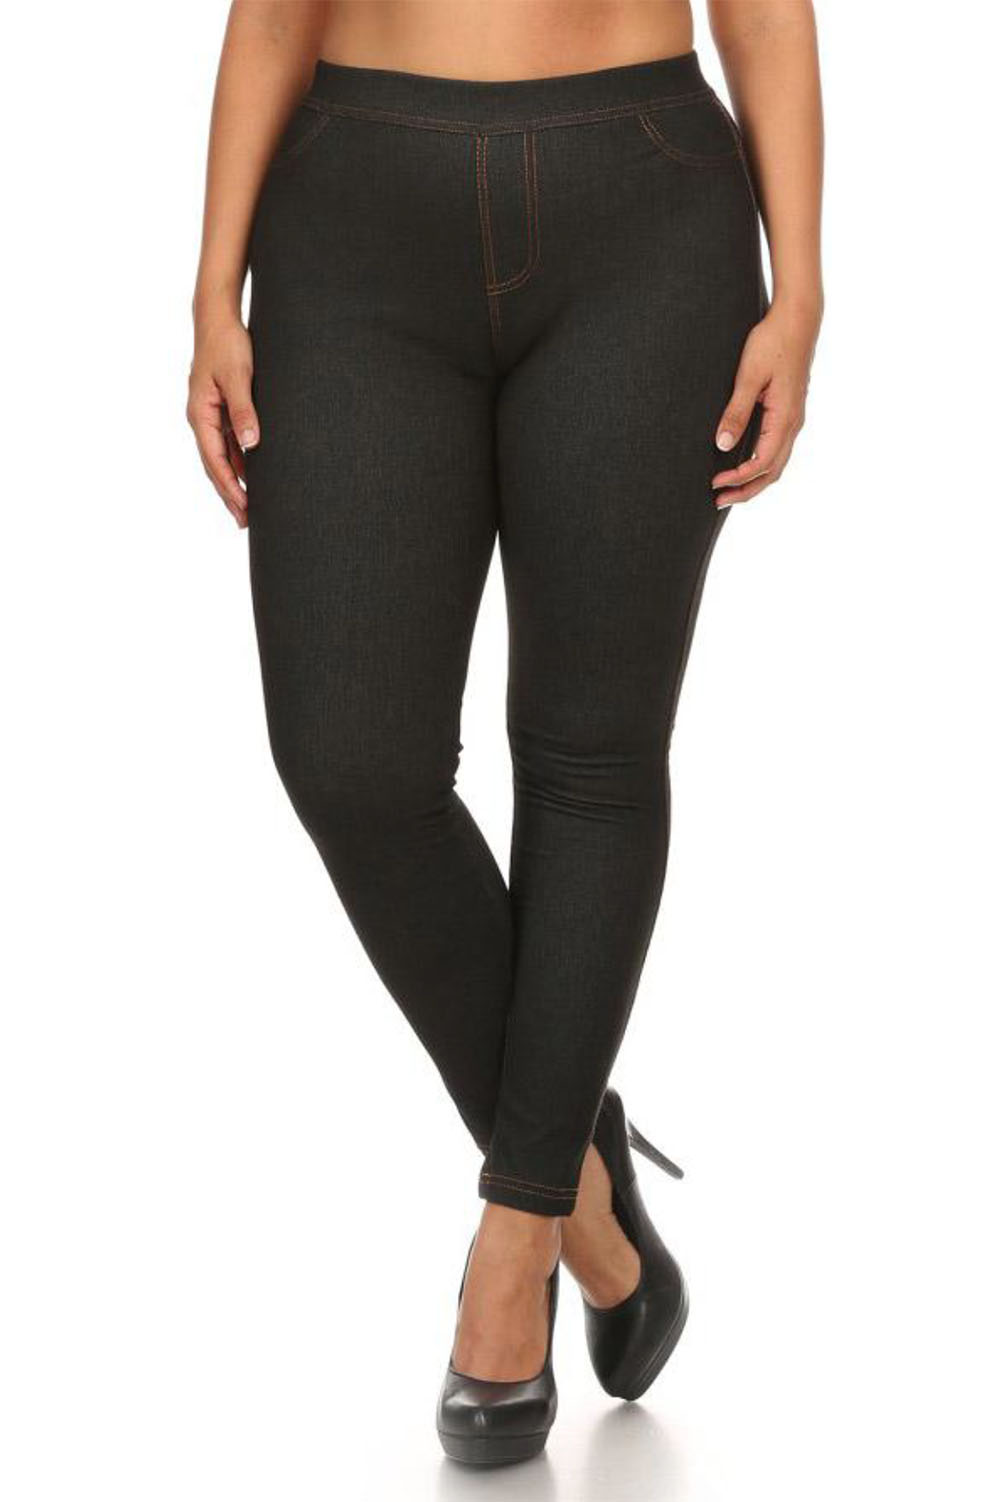 Plus Size Fleece Lined Jeggings Jean Denim Look Leggings Stretch Pants 1x 2x 3x Ebay